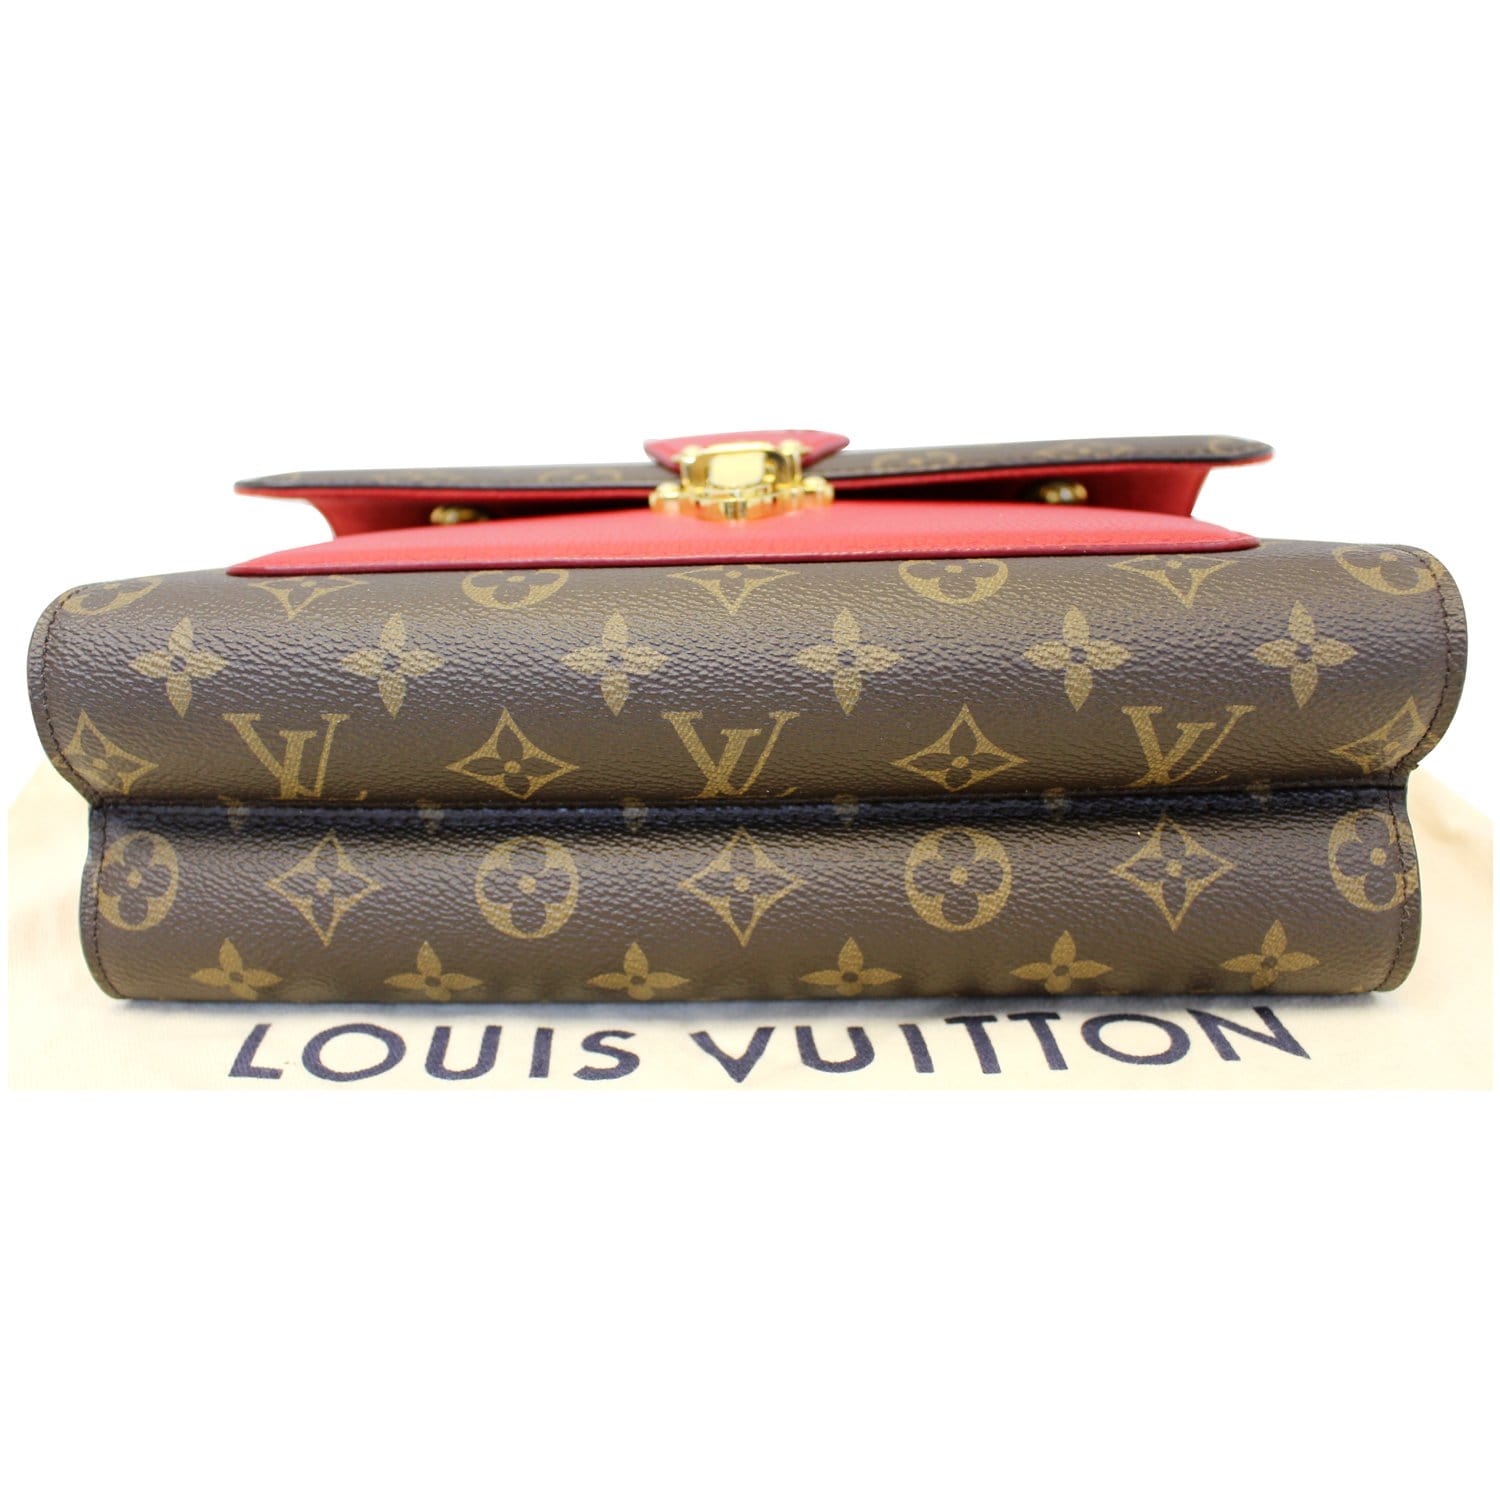 Louis Vuitton Cerise Monogram Canvas and Leather Victoire Bag Louis Vuitton